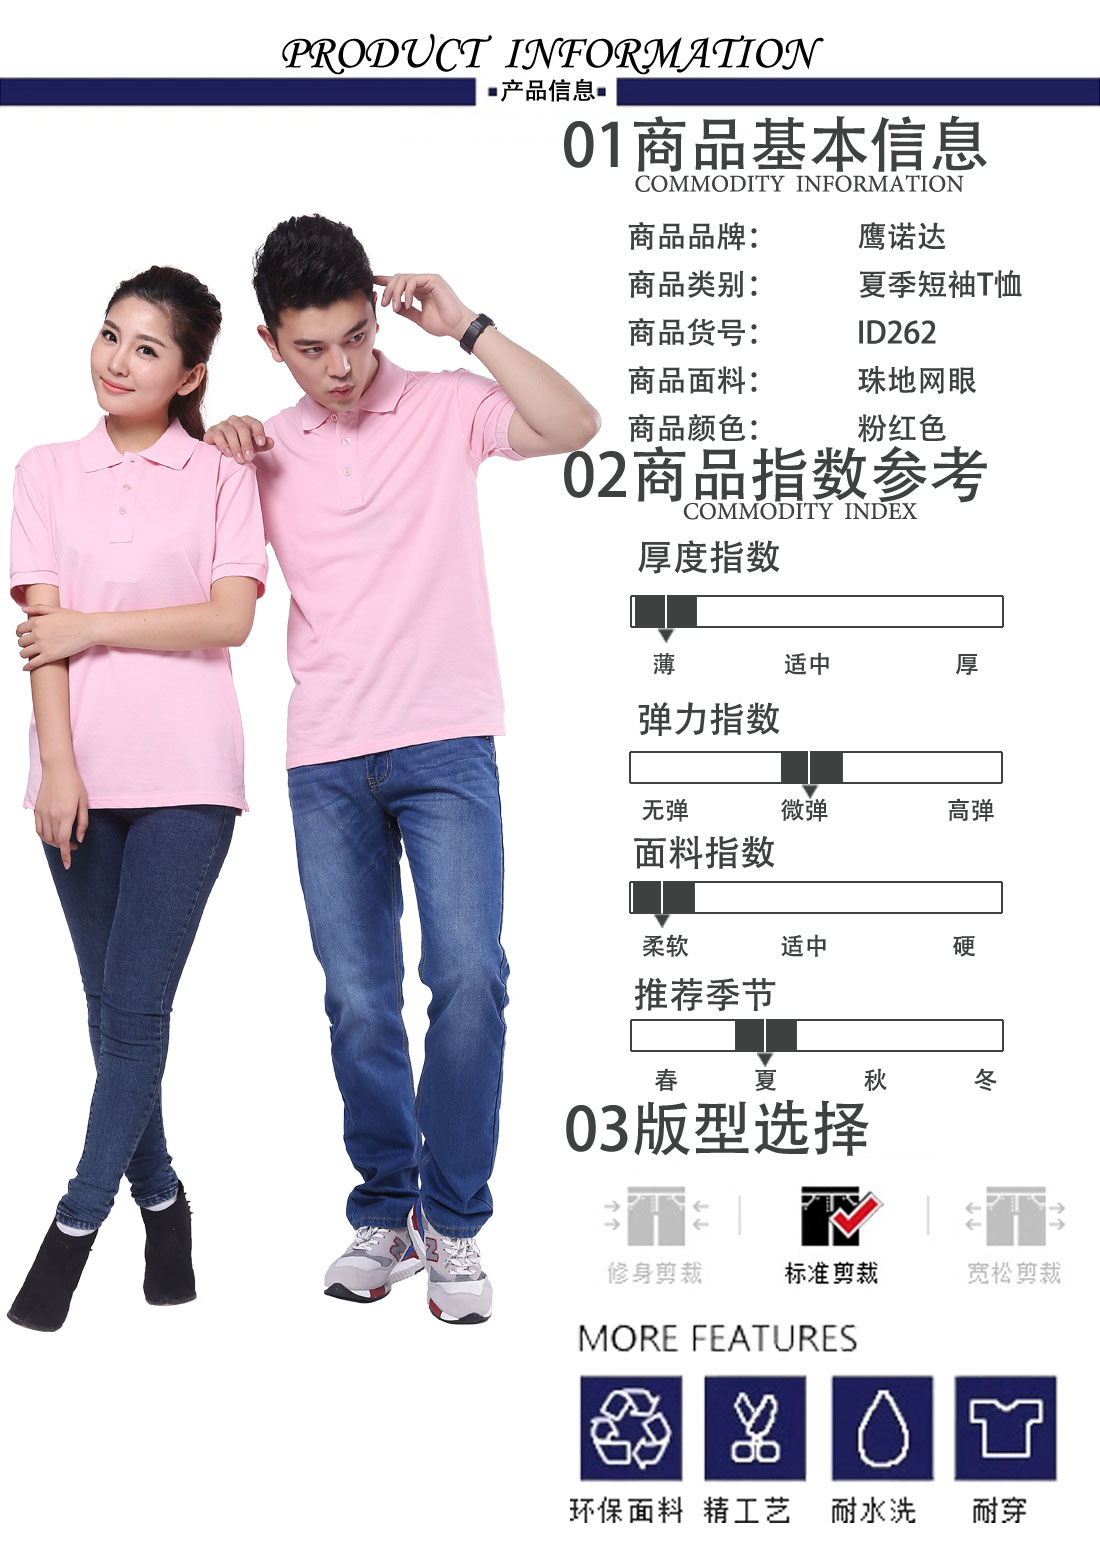 超高支纱纯棉短袖T恤工作服 修身粉红t恤衫工作服商品基本信息、指数参考、版型选择